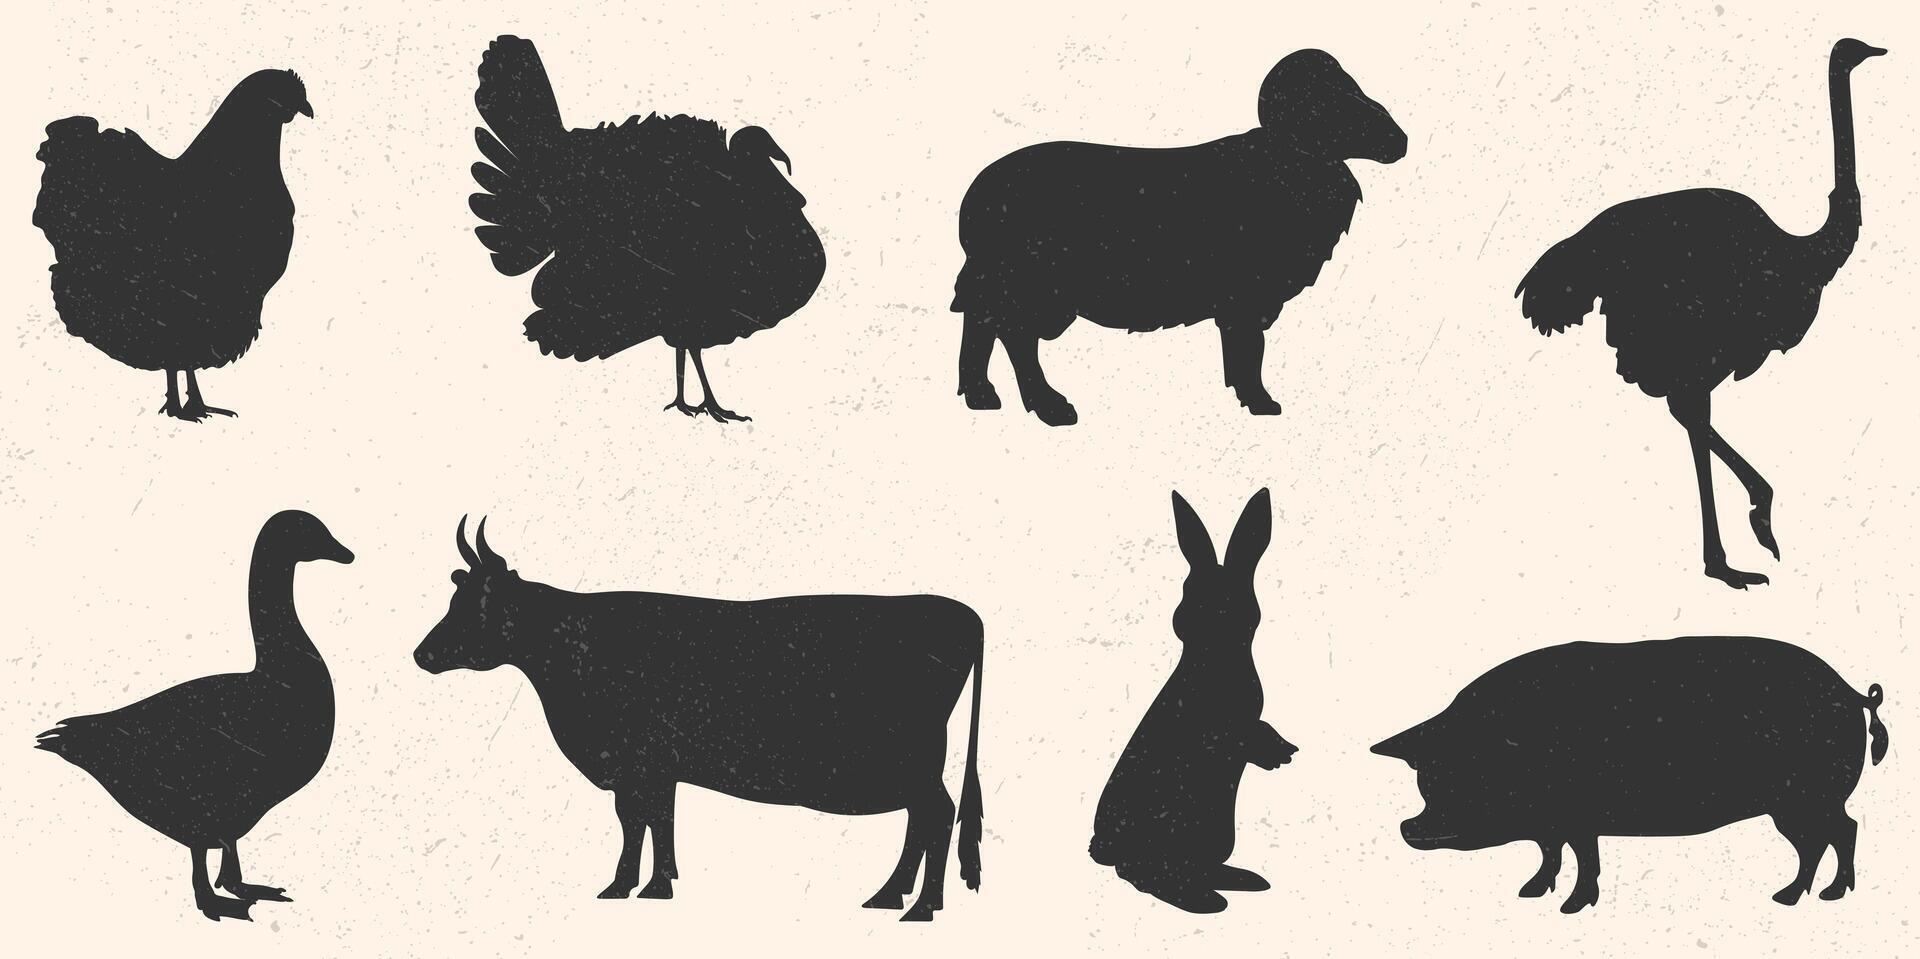 icoon voor logo, illustratie van boerderij dieren en vogels. silhouet van konijn, koe, RAM, varken, struisvogel, kalkoen, kip en gans. vector eps 10 met grunge structuur